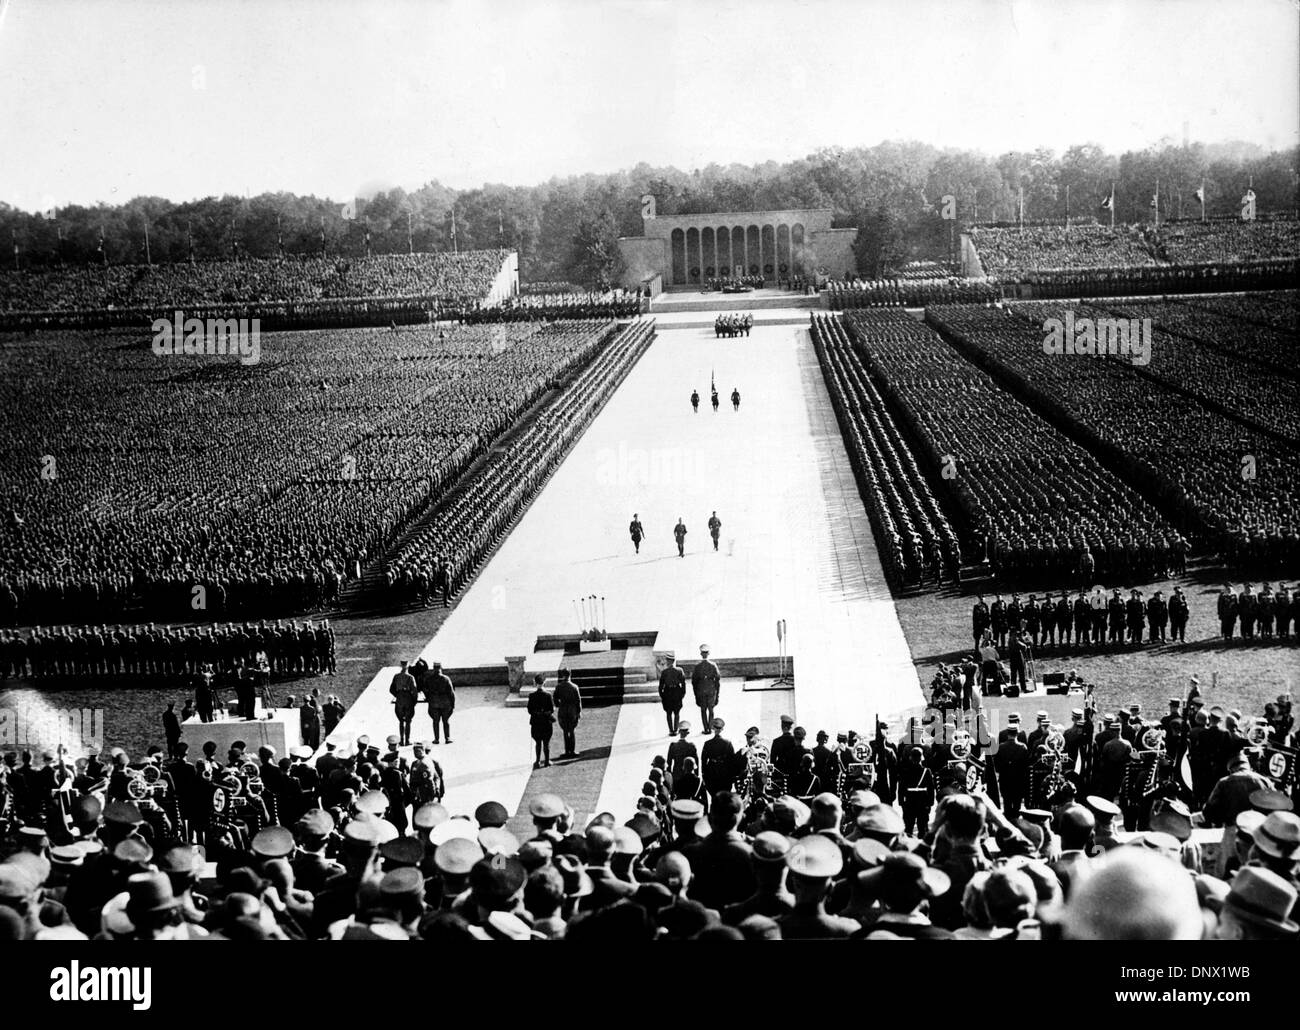 Septembre 14, 1936 - Nuremberg, Allemagne - plus de 100 000 sympathisants nazis se réunissent à Nuremberg, Allemagne, pour un rallye nazie en 1936. (Crédit Image : © Keystone Photos USA/ZUMAPRESS.com) Banque D'Images